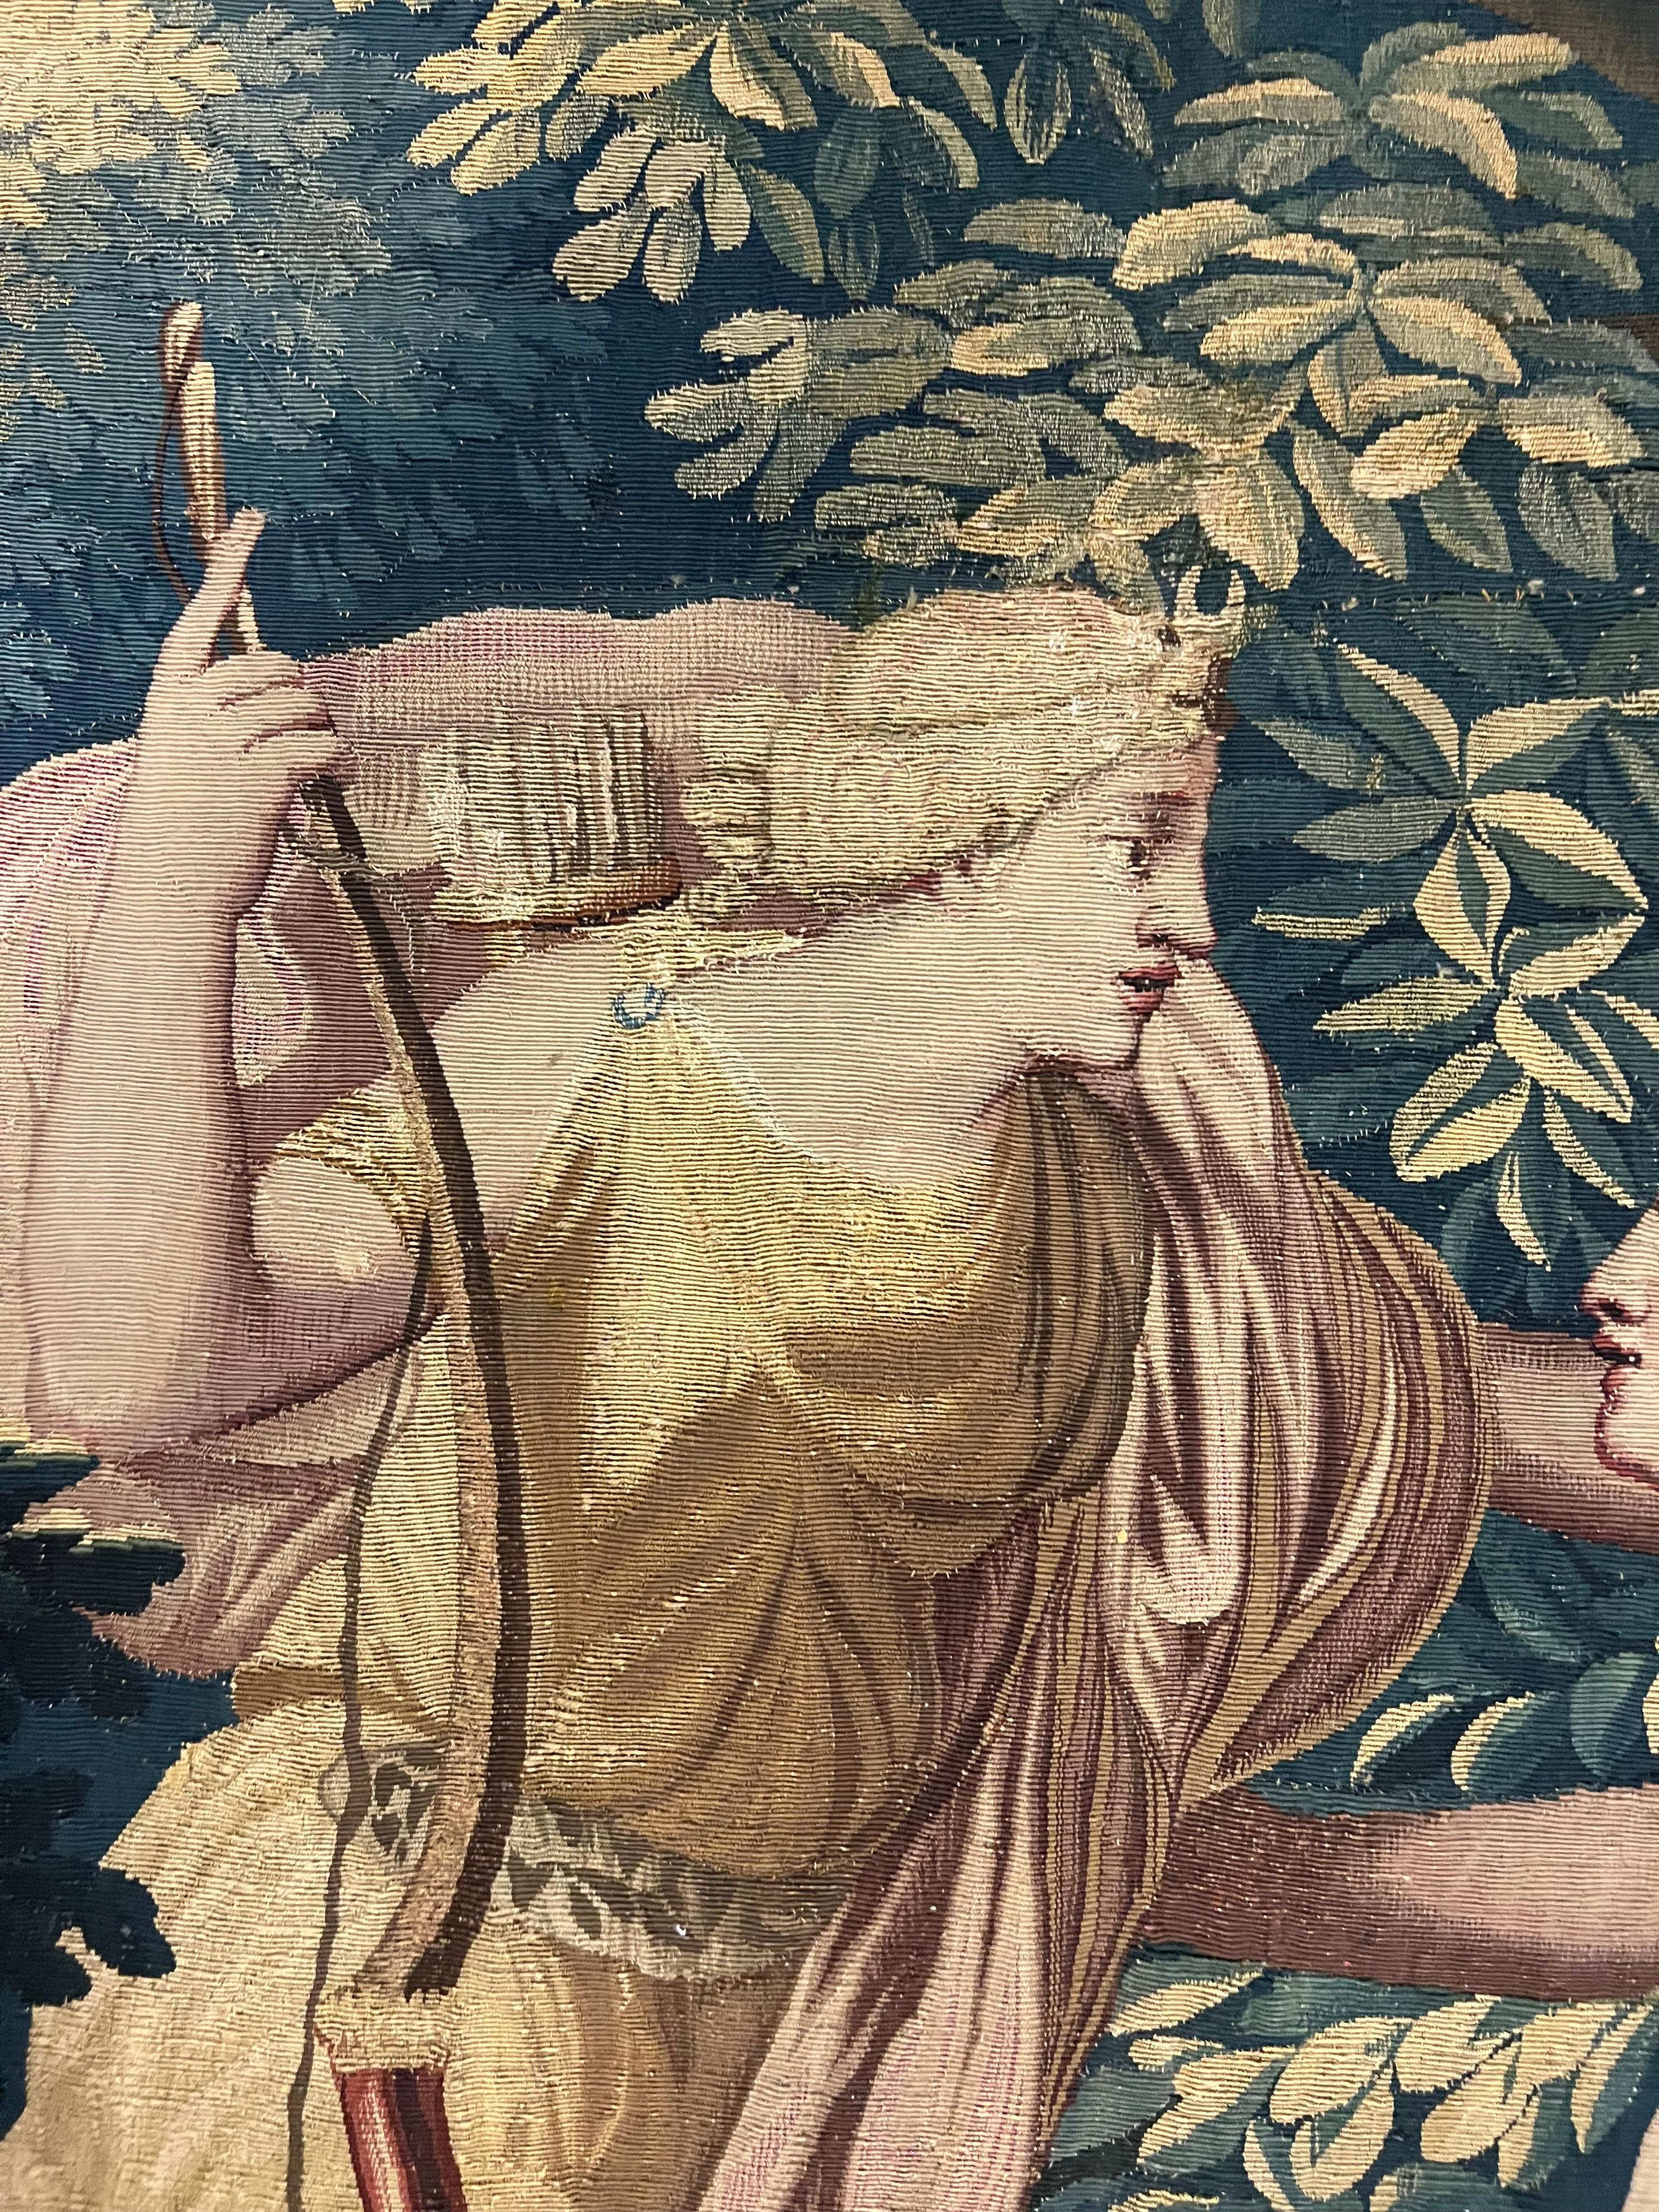 Histoire de Diana

Tapisserie de Bruxelles du 17e siècle

Laine et soie

200 x 299 cm, 79 x 118 in

Collectional, d'une collection privée française.